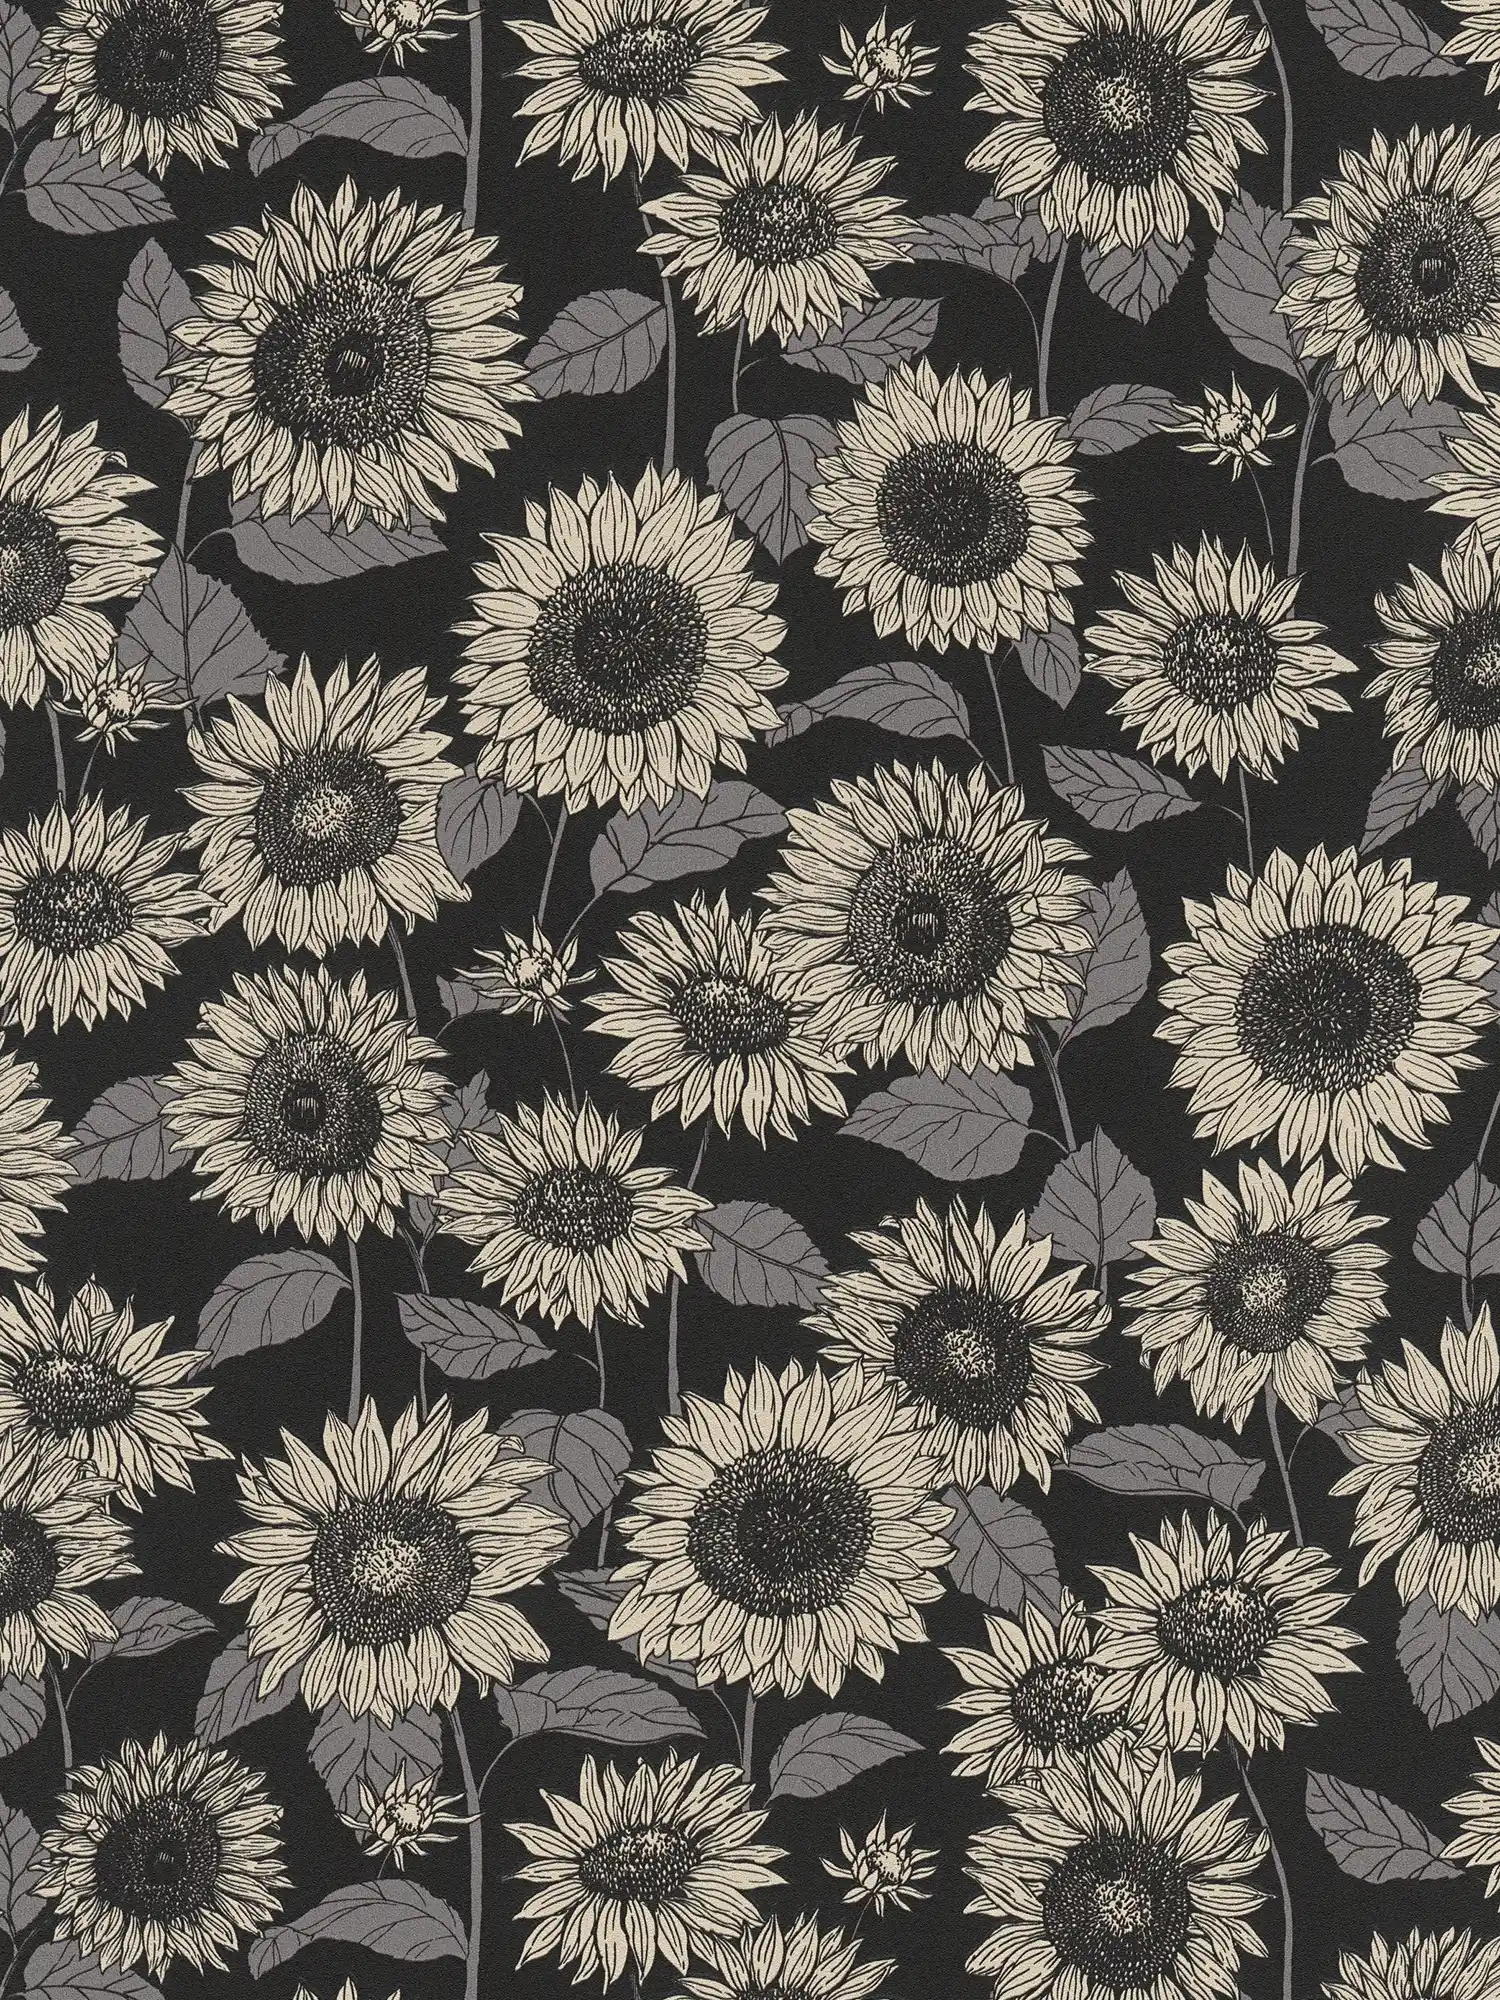 Sonnenblumen Tapete mit Metallic-Effekt Blüten – Schwarz, Anthrazit, Grau
